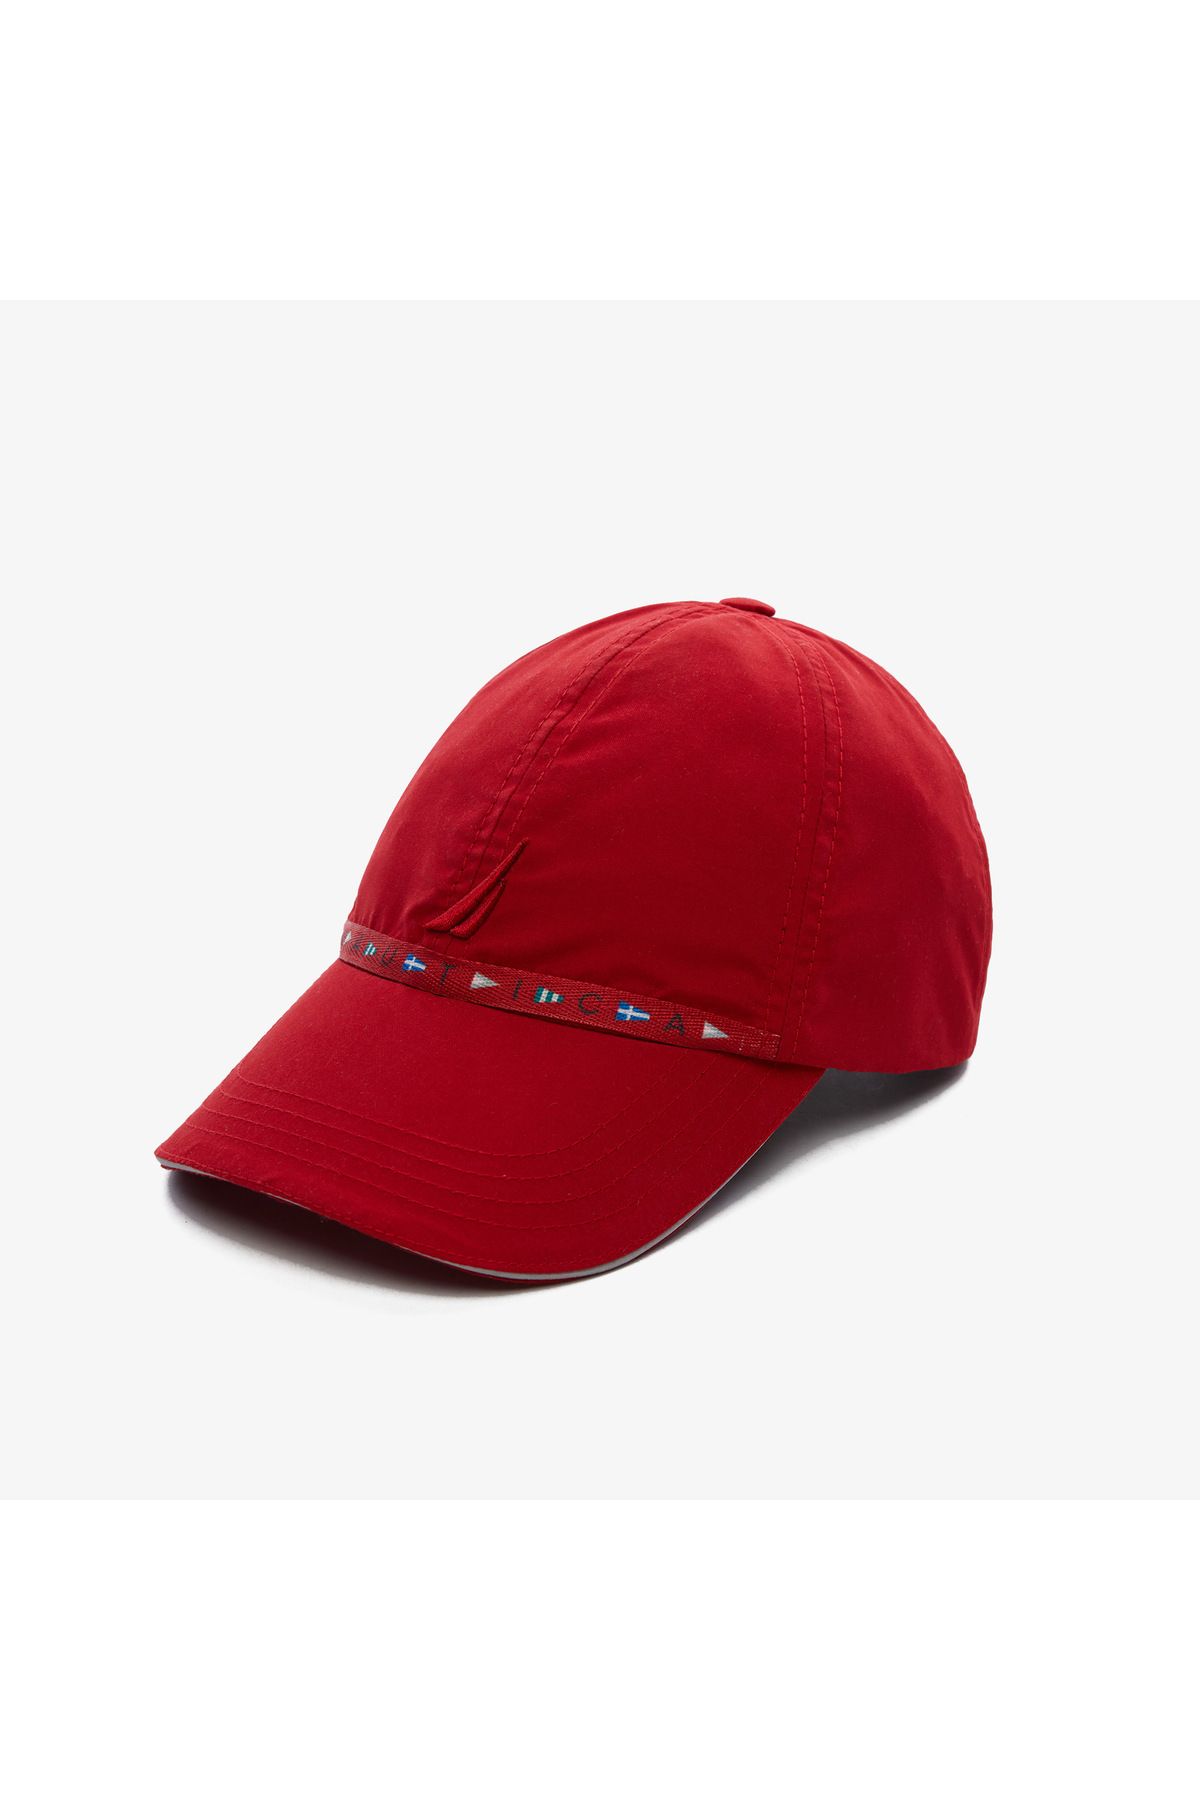 Nautica unisex red hat